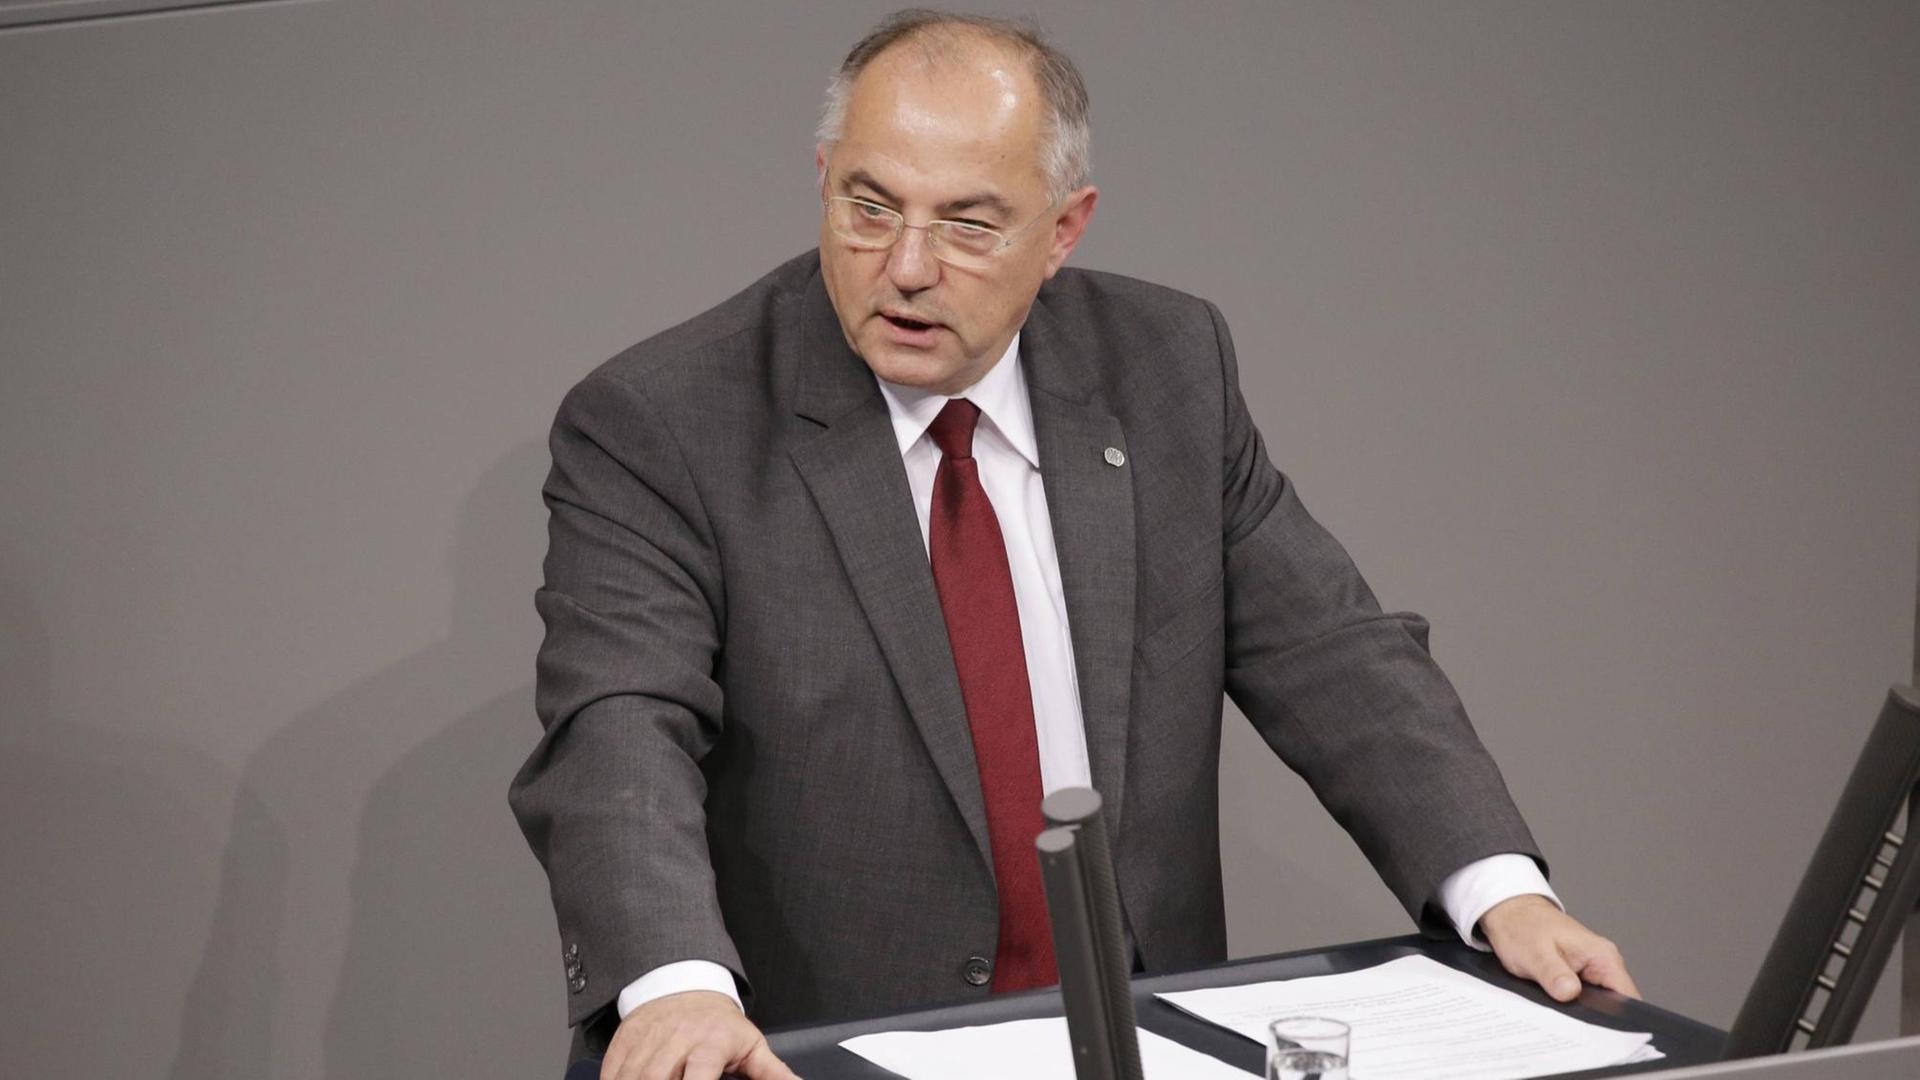 Josip Juratovic, SPD, spricht am 22. November 2017 im Deutschen Bundestag